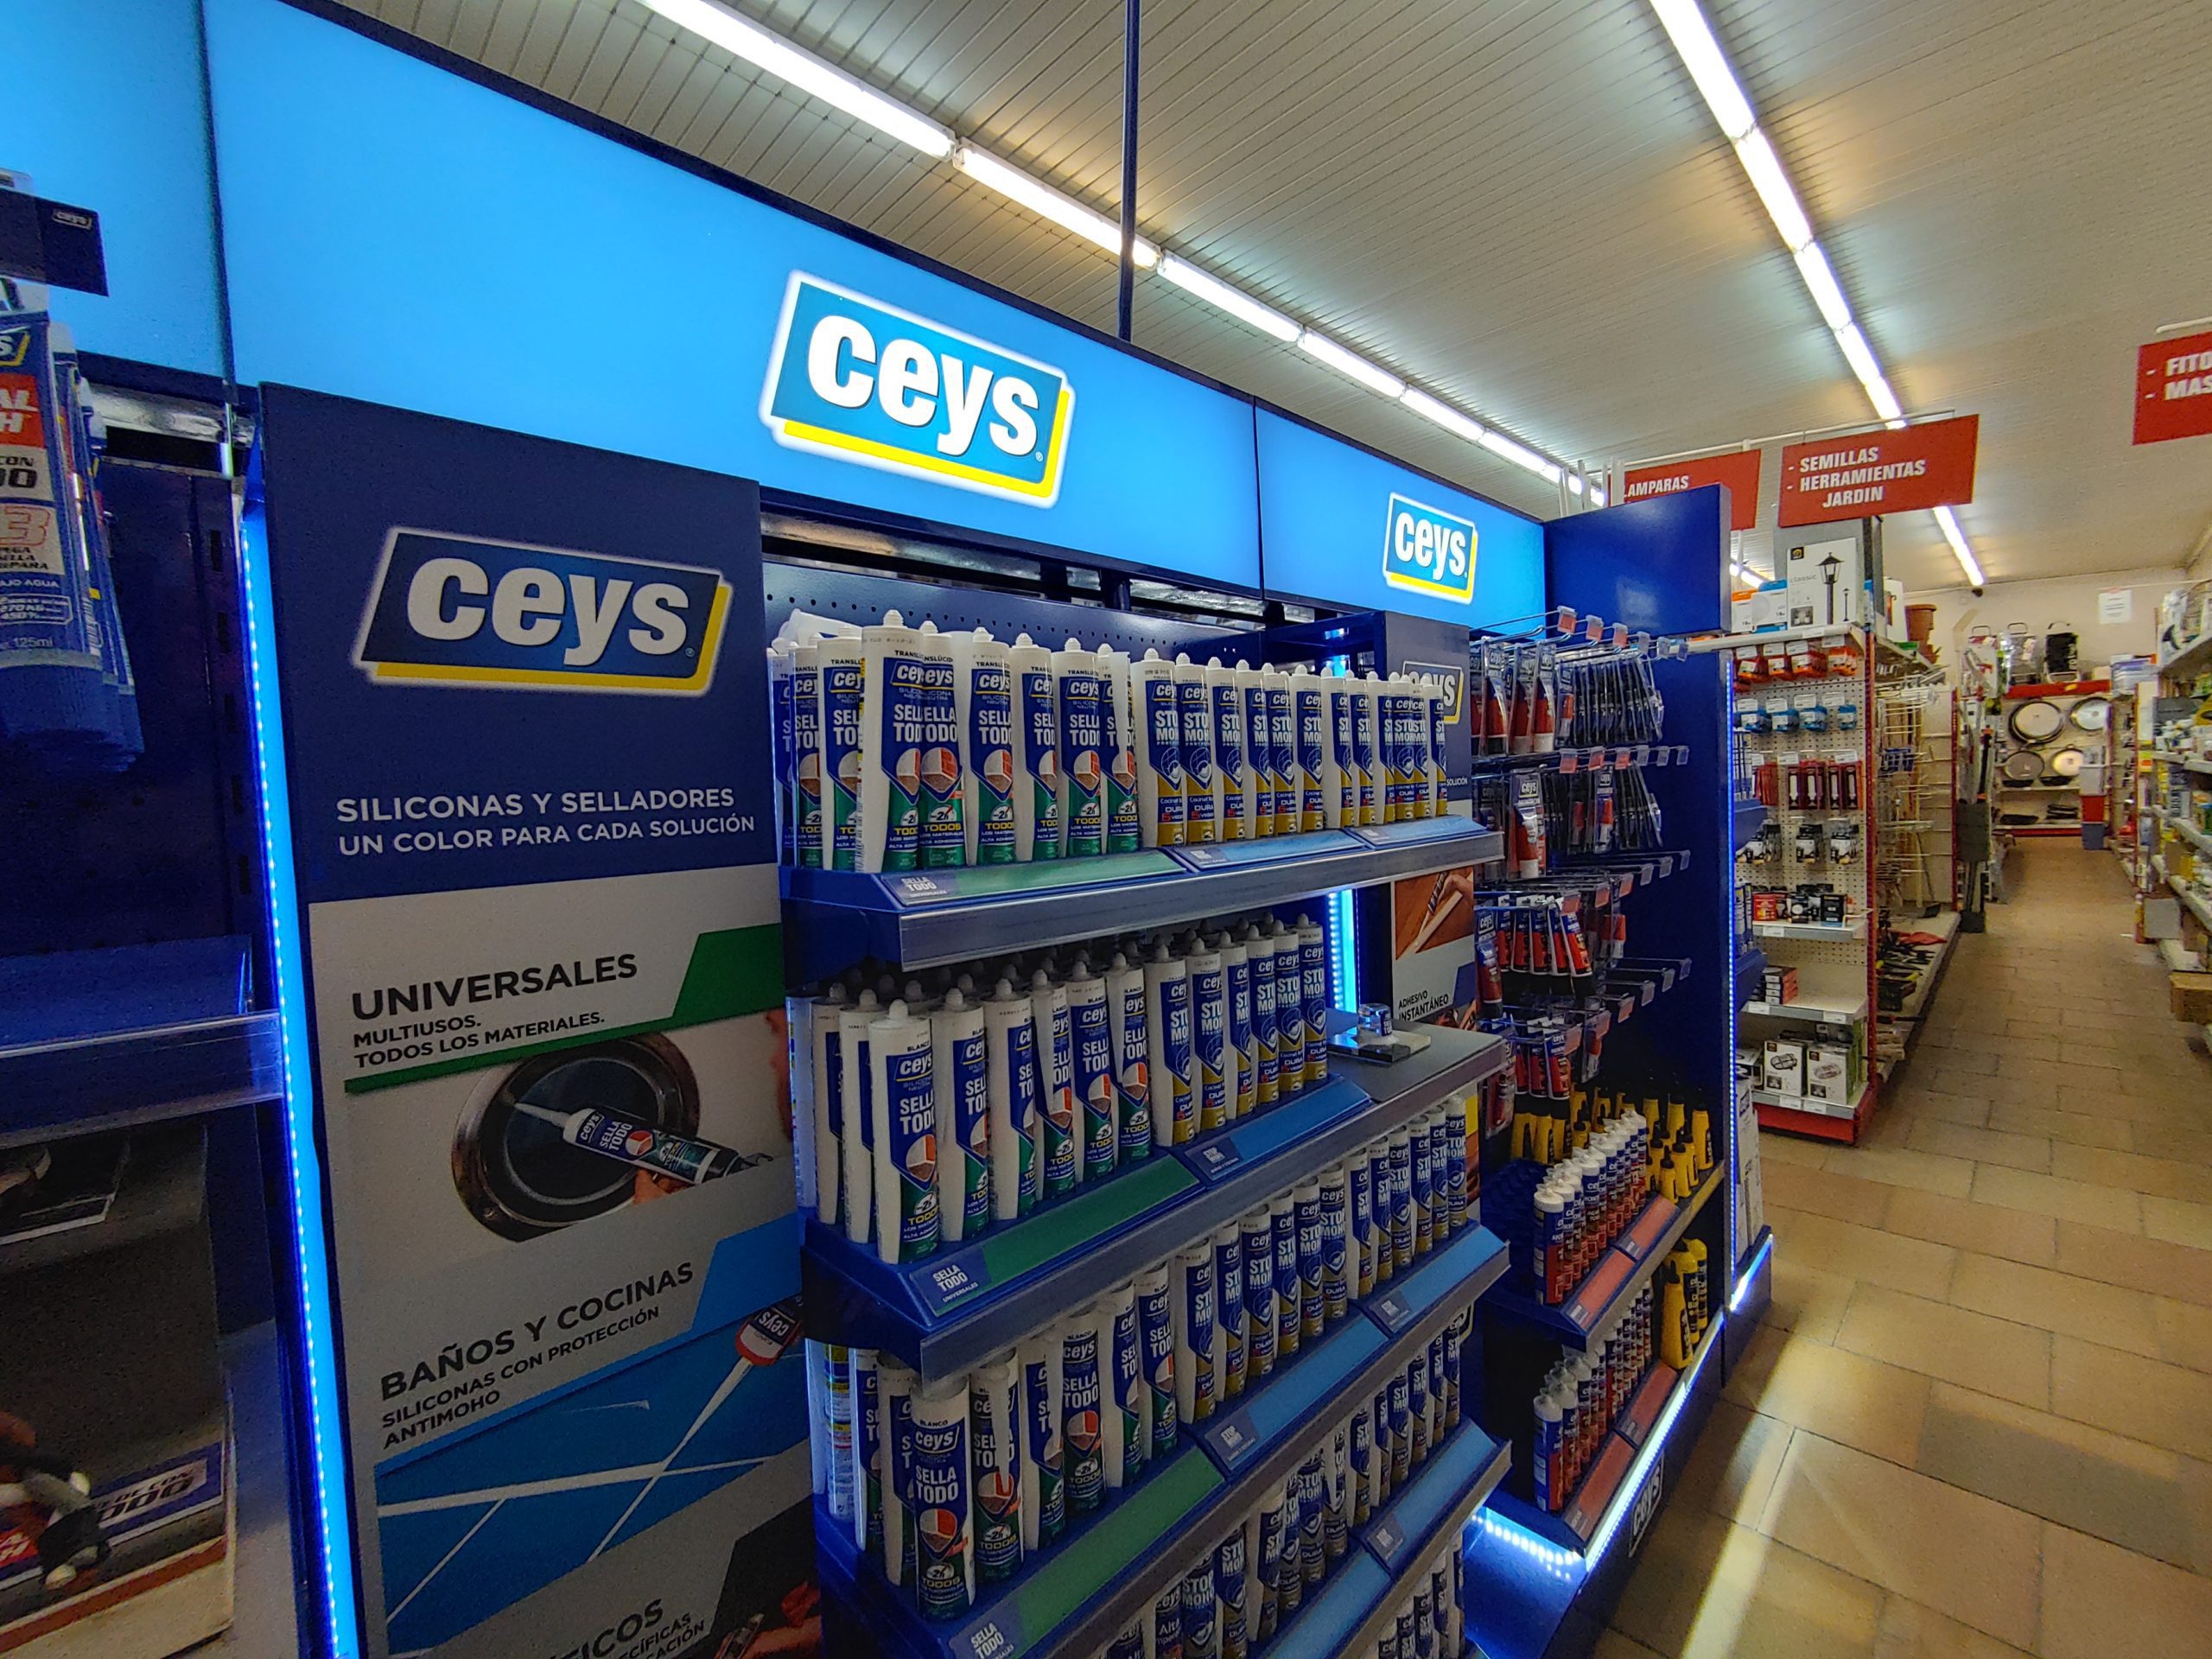 Lineal de supermercado de Ceys. Acciones en el punto de venta